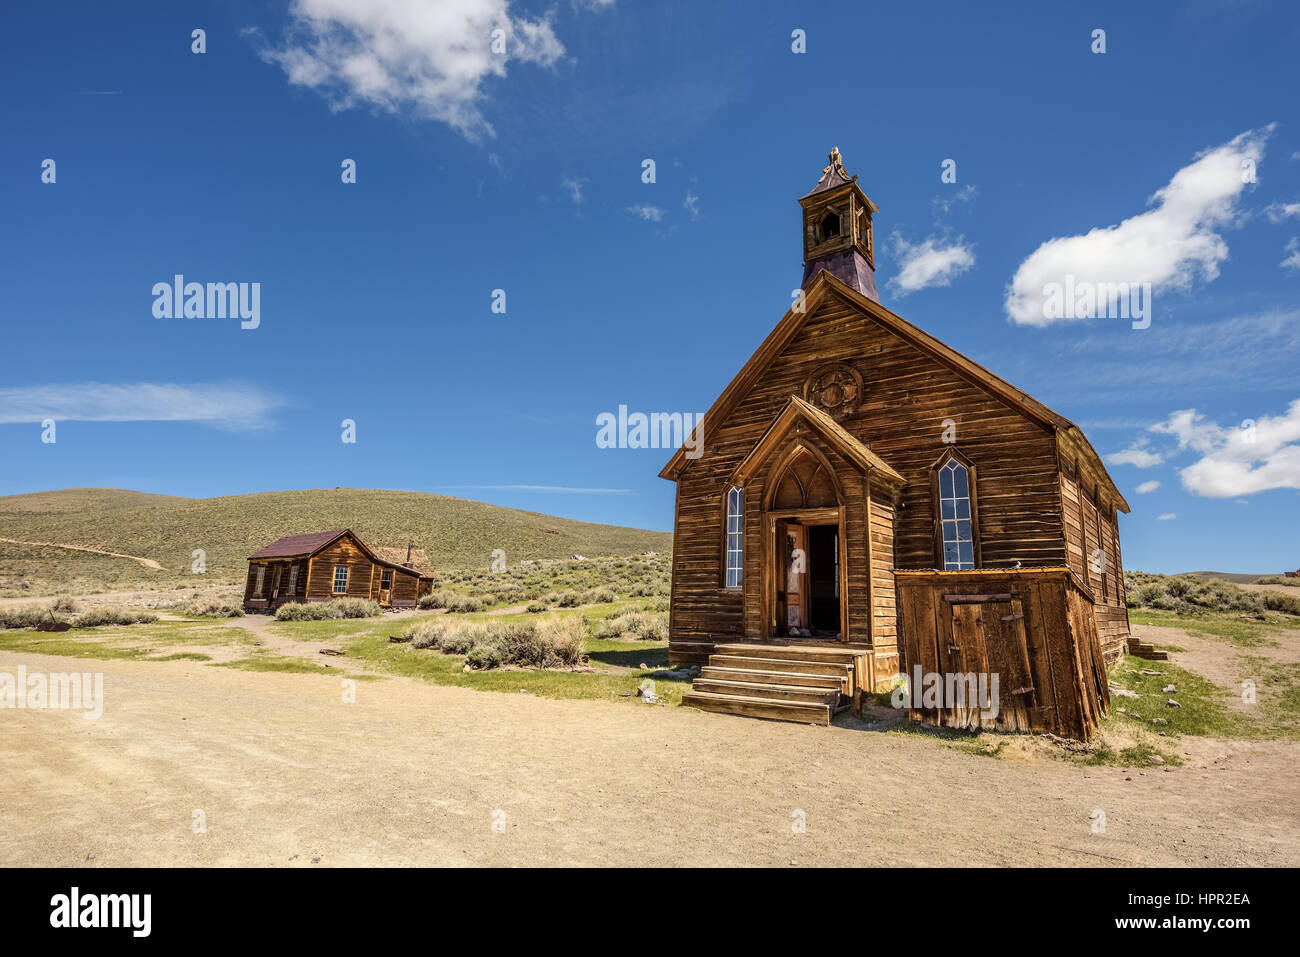 Chiesa di legno in Bodie ghost town, California. Bodie è uno storico parco dello stato da un Gold Rush era nelle colline Bodie est della Sierra Nevada. Foto Stock